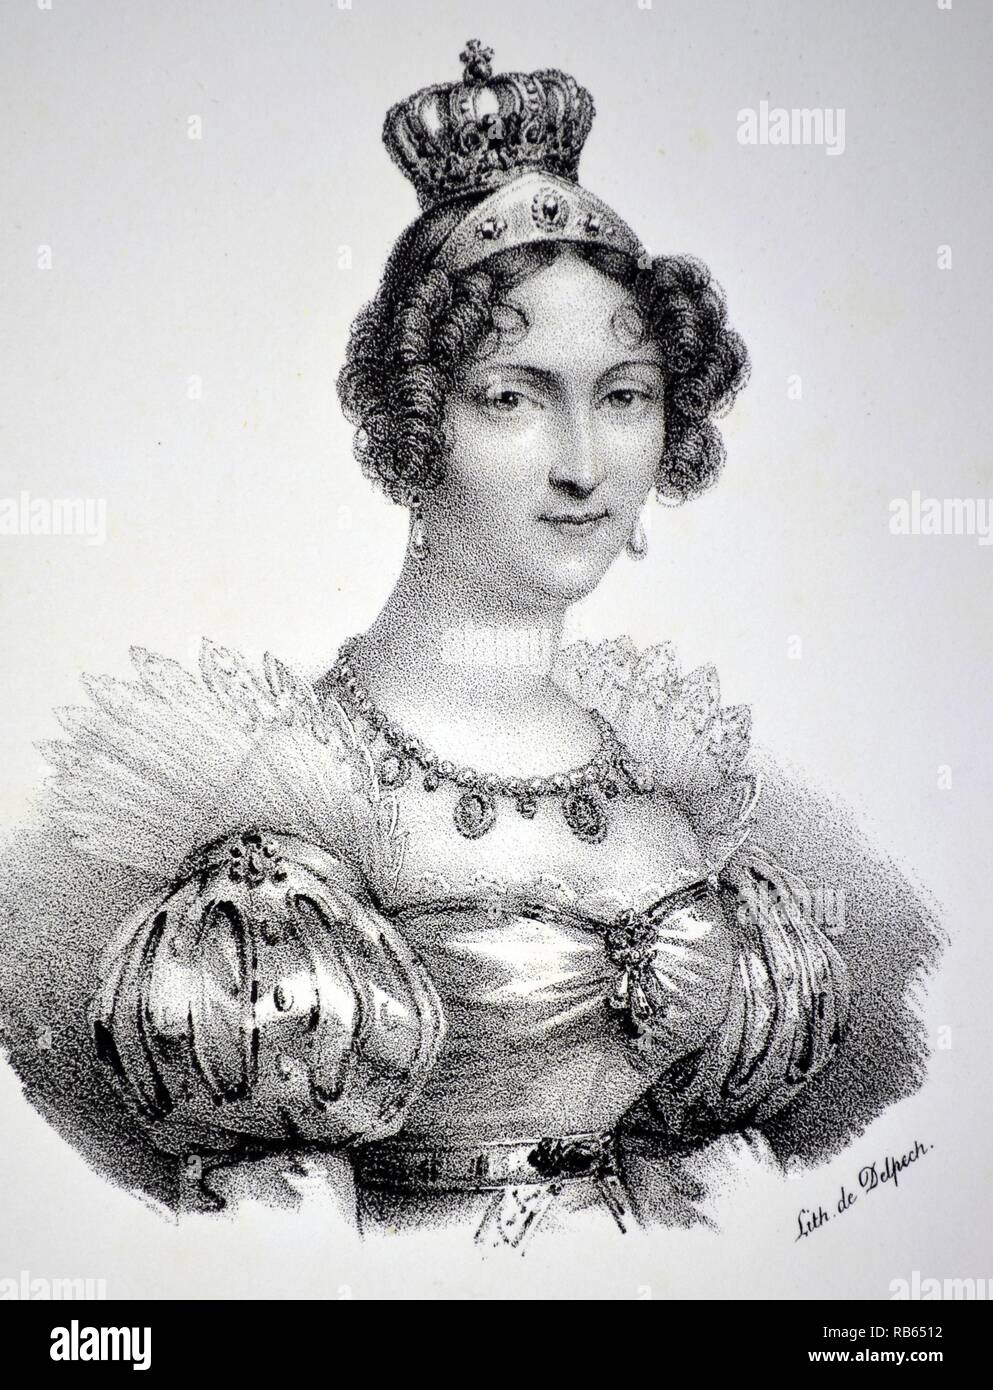 Hortense de Beauharnais (1783-1837) Stieftochter und Schwägerin von Napoleon I. Königin von Holland 1806-1810. Mutter von Napoleon III. Lithographie, Paris, 1832 Stockfoto